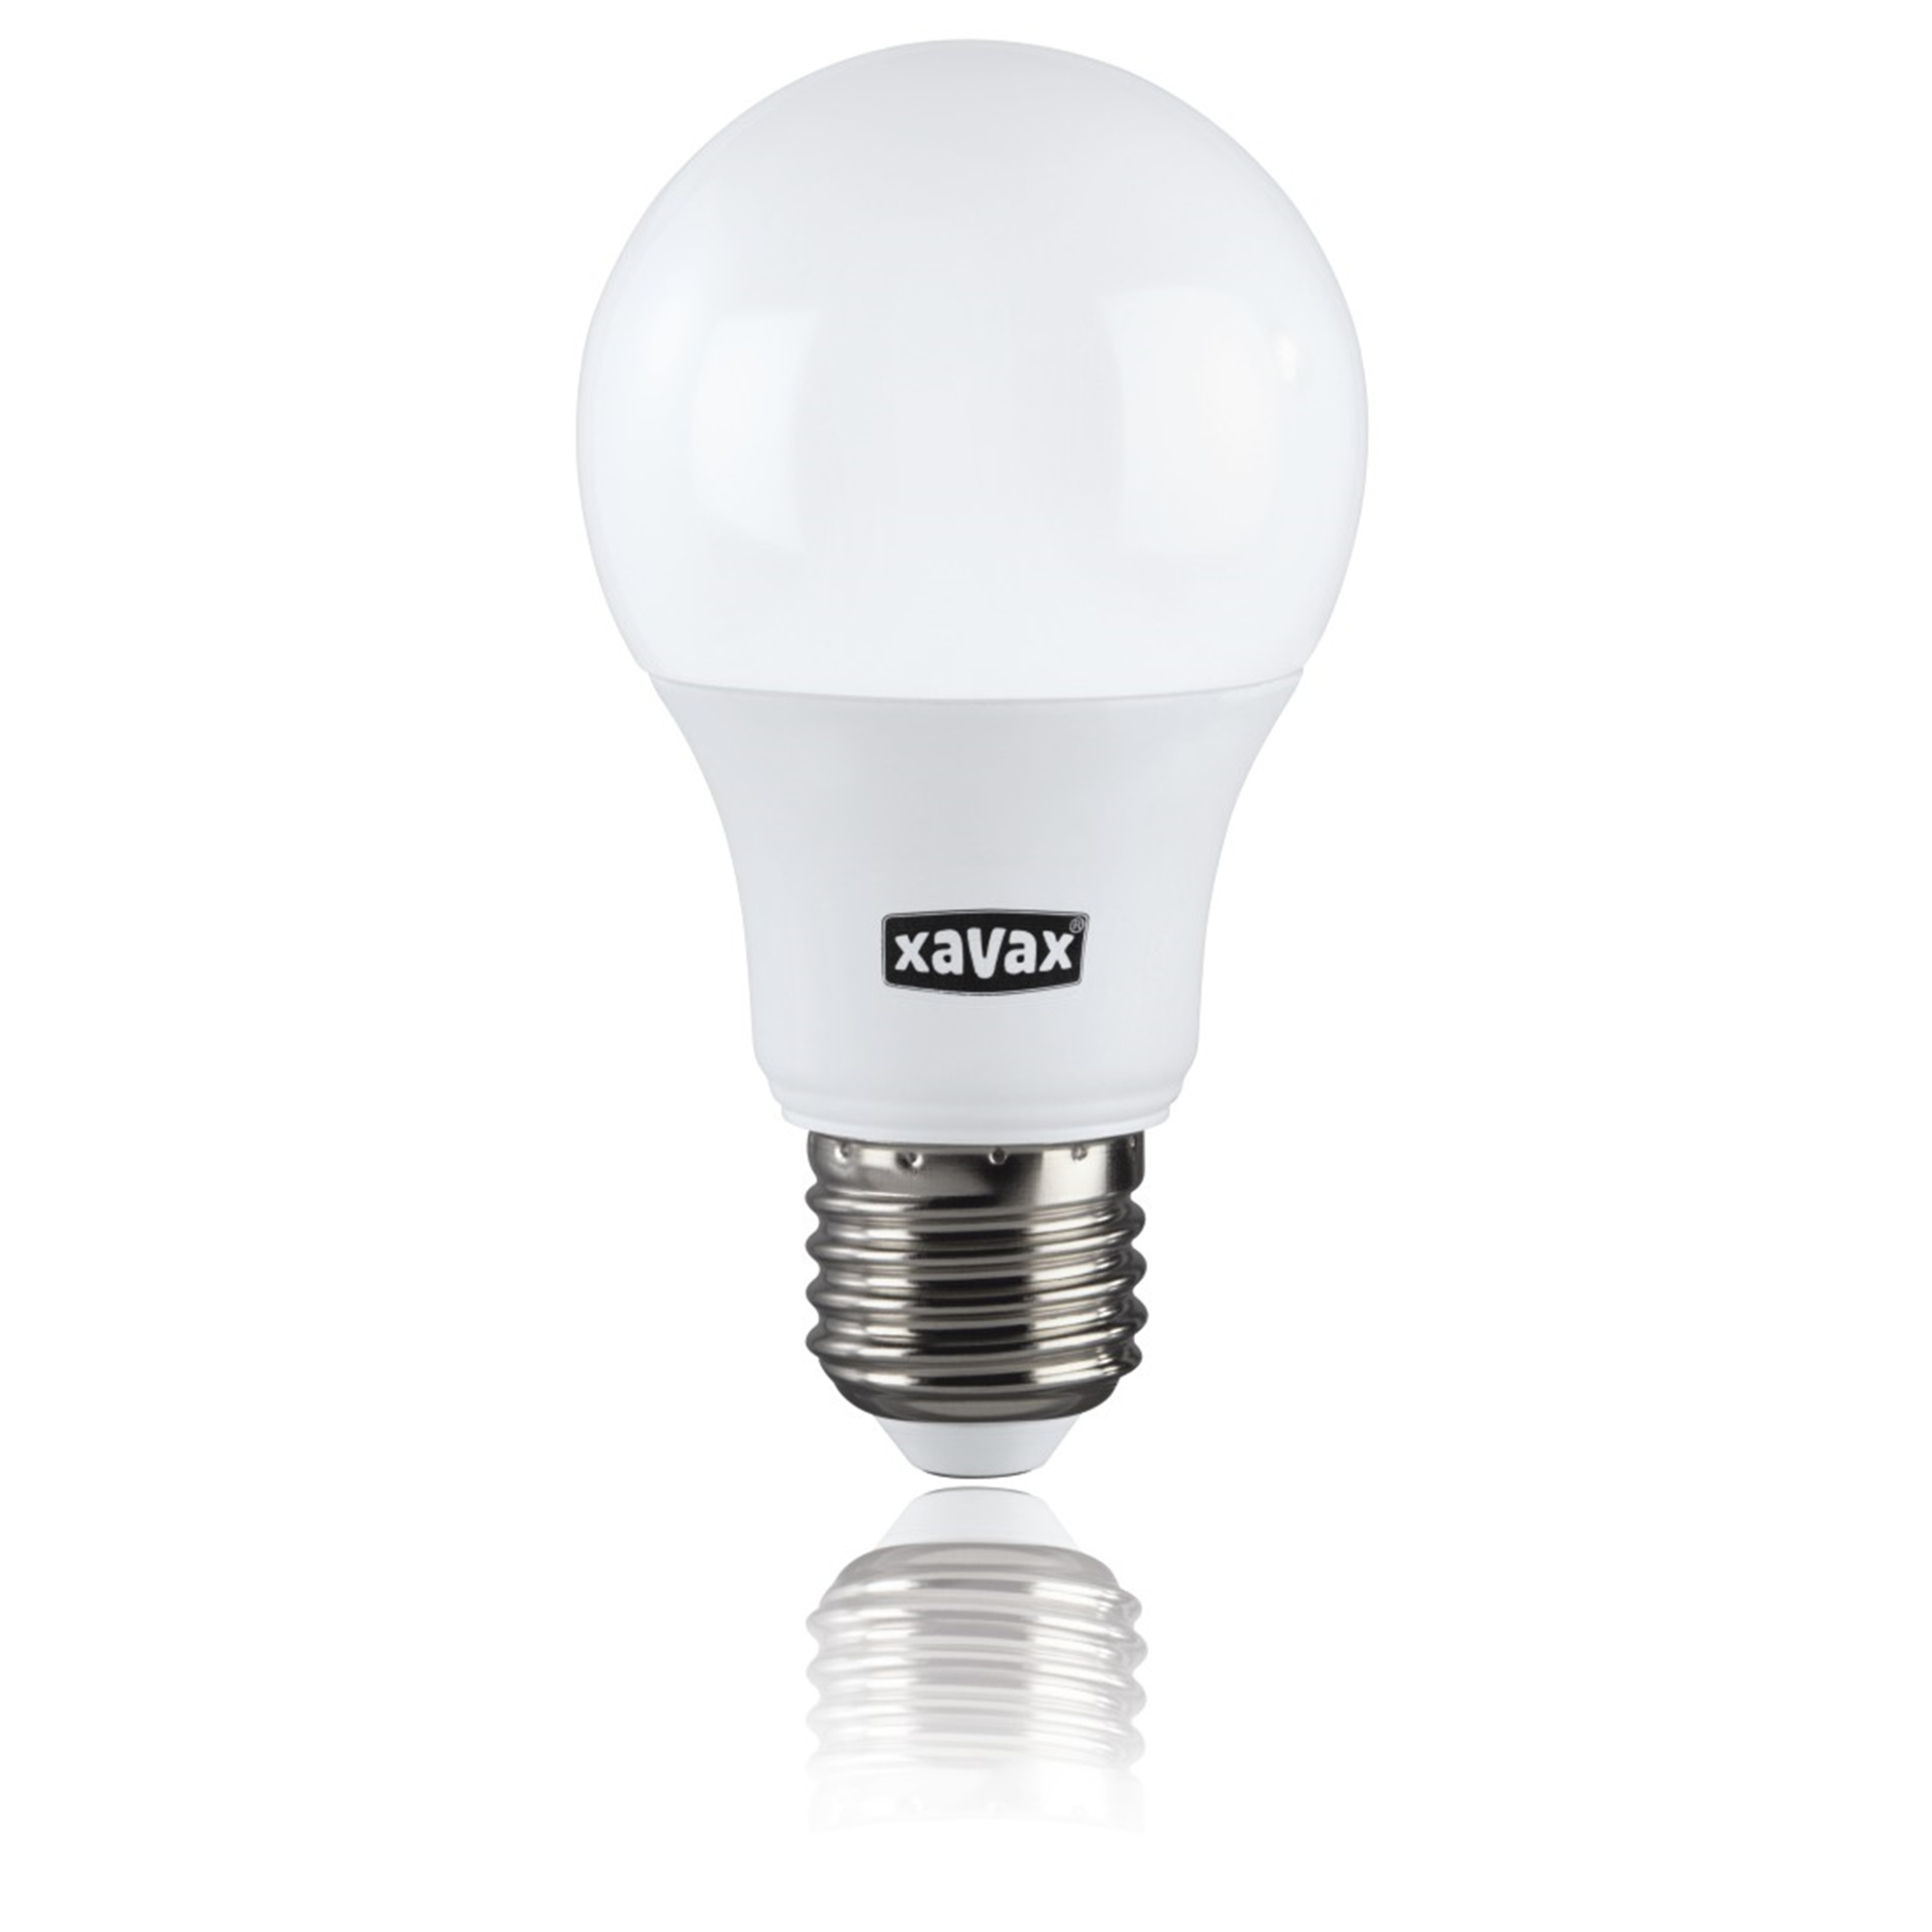 75W LED-Lampe Warmweiß E27, XAVAX ersetzt E27 1055lm